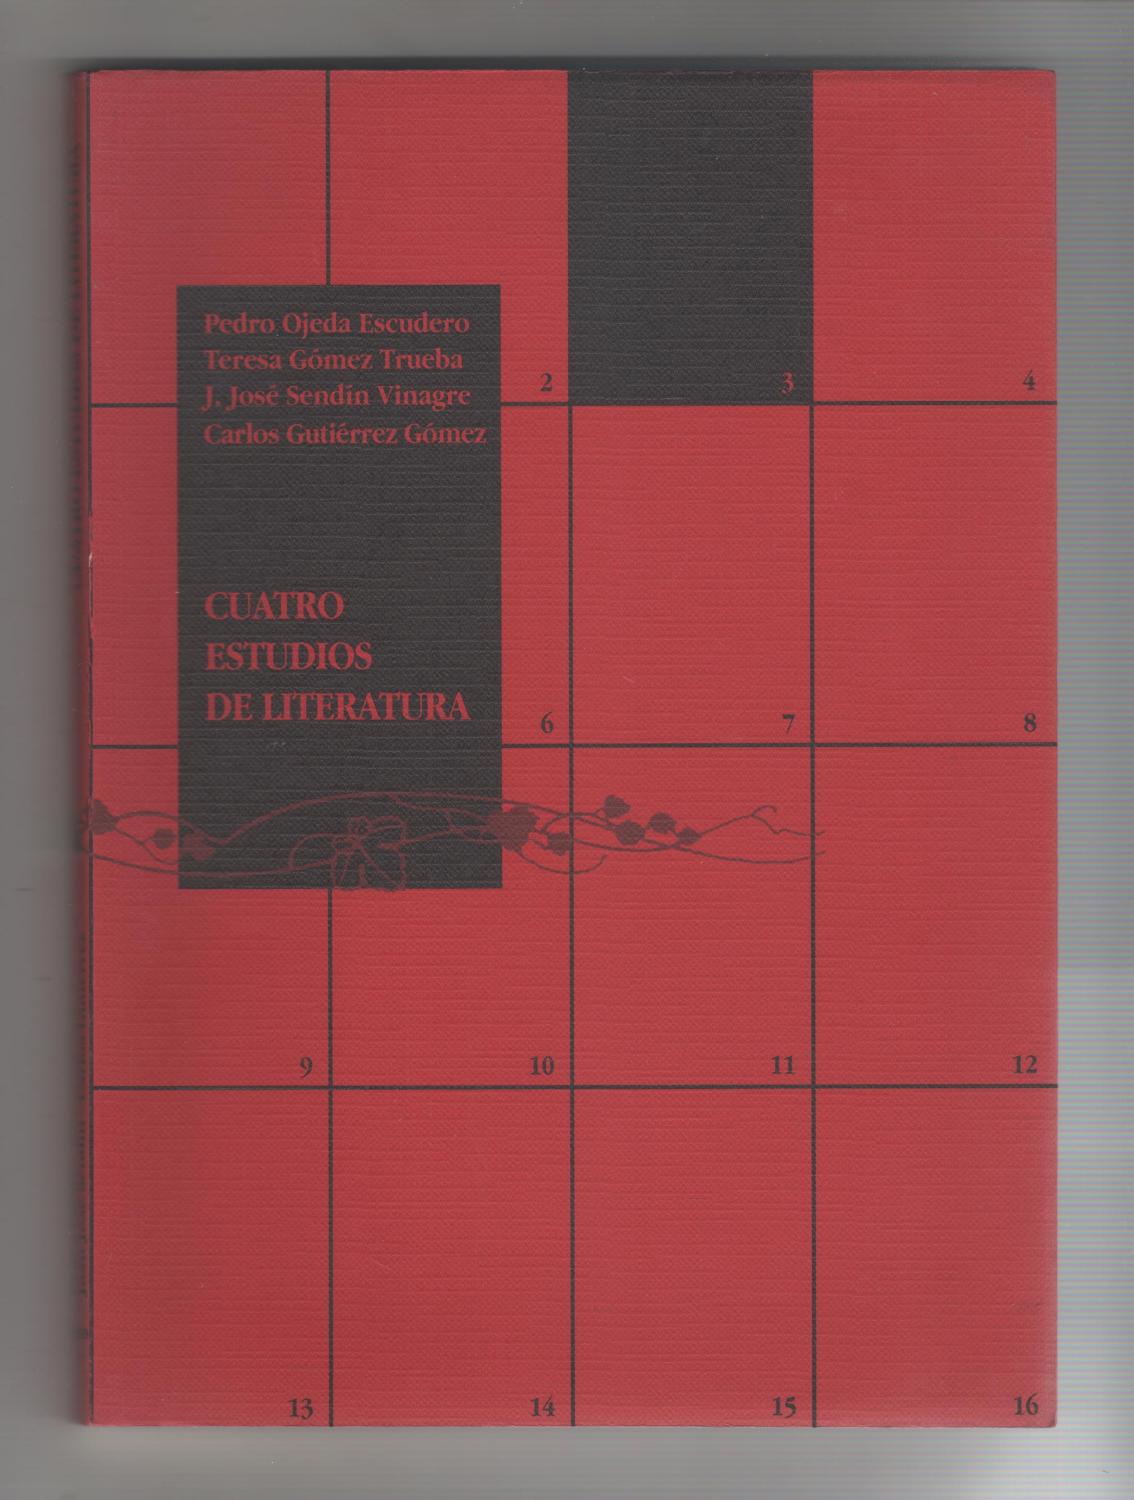 Imagen de portada del libro Cuatro estudios de literatura